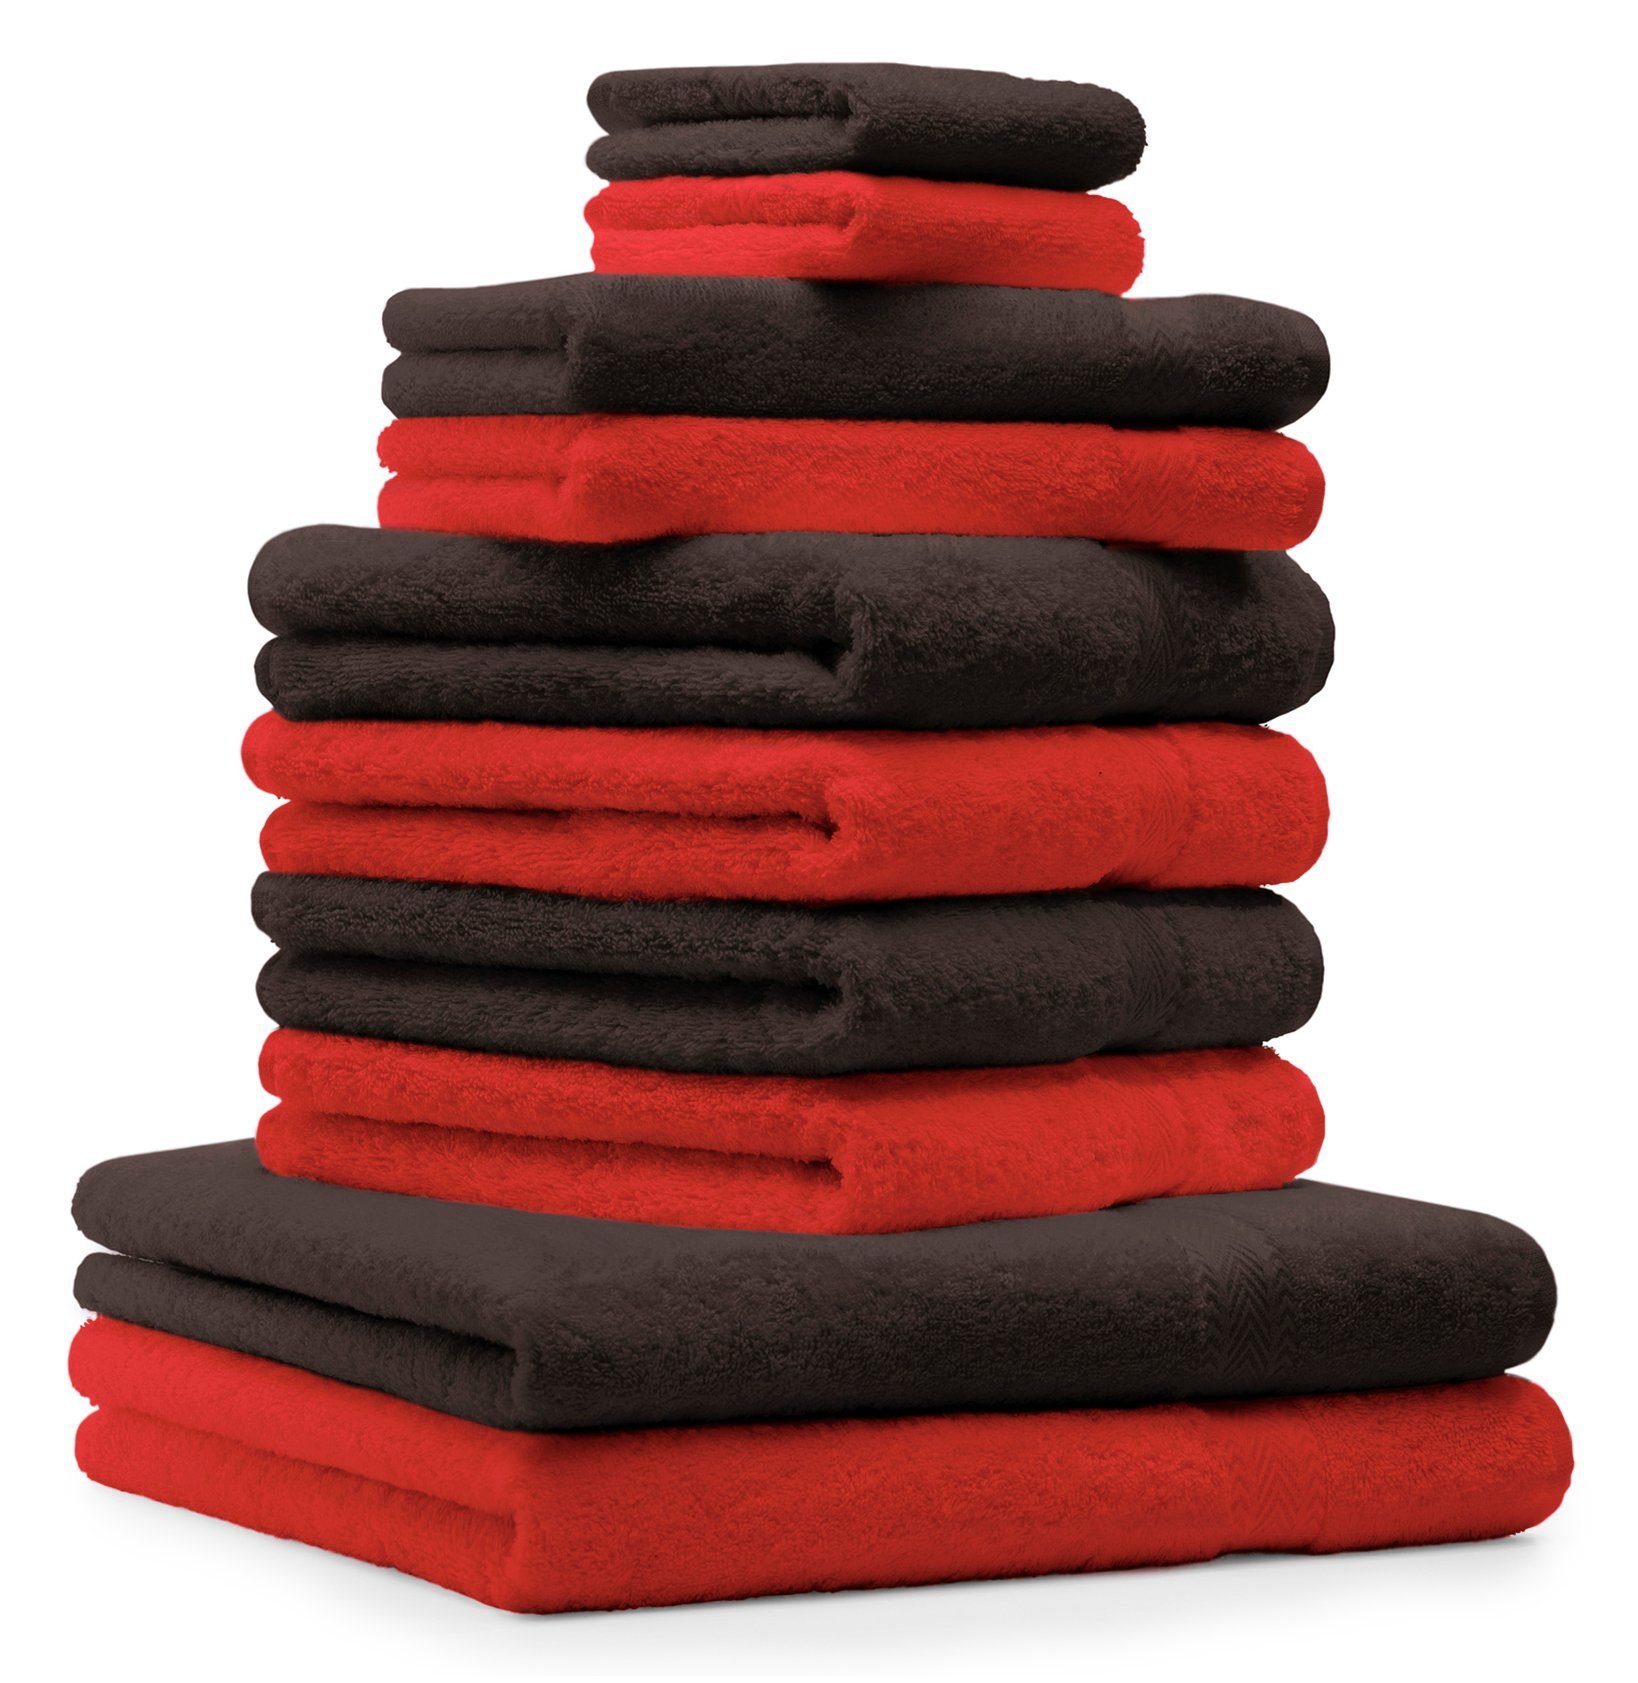 Betz Handtuch Set 10-TLG. Handtuch-Set Premium Farbe Rot & Dunkelbraun, 100% Baumwolle, (10-tlg)